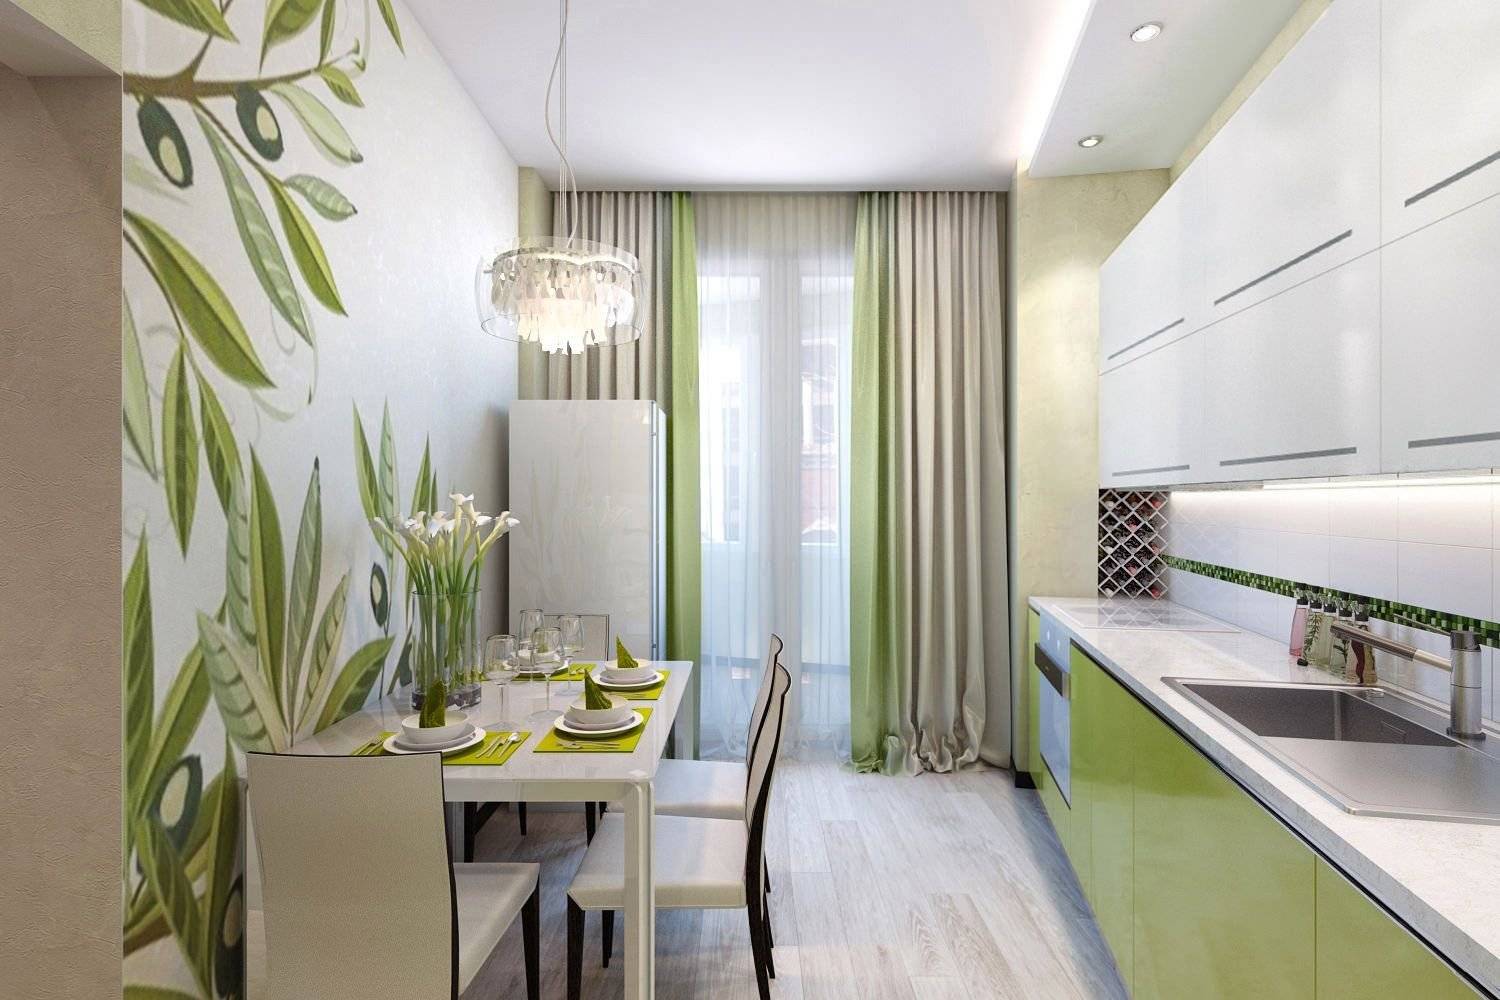 Зеленая кухня: фото идеи дизайна интерьера с разными сочетаниями цветов